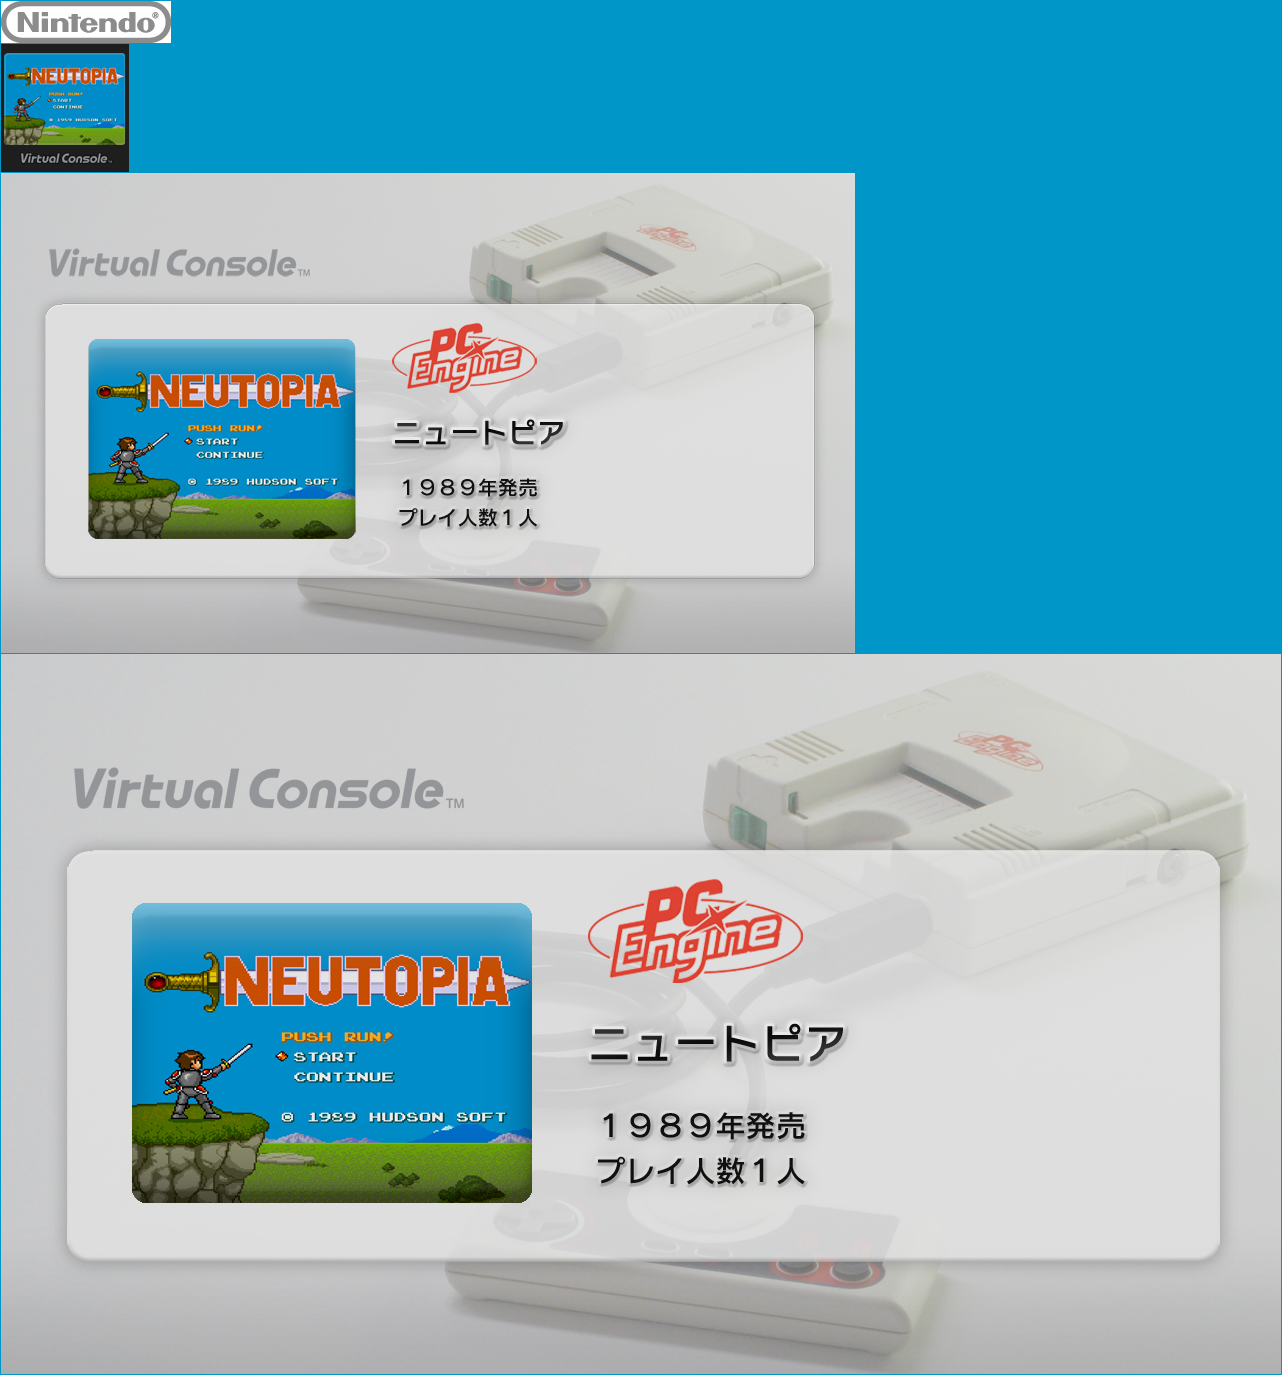 Virtual Console - Neutopia